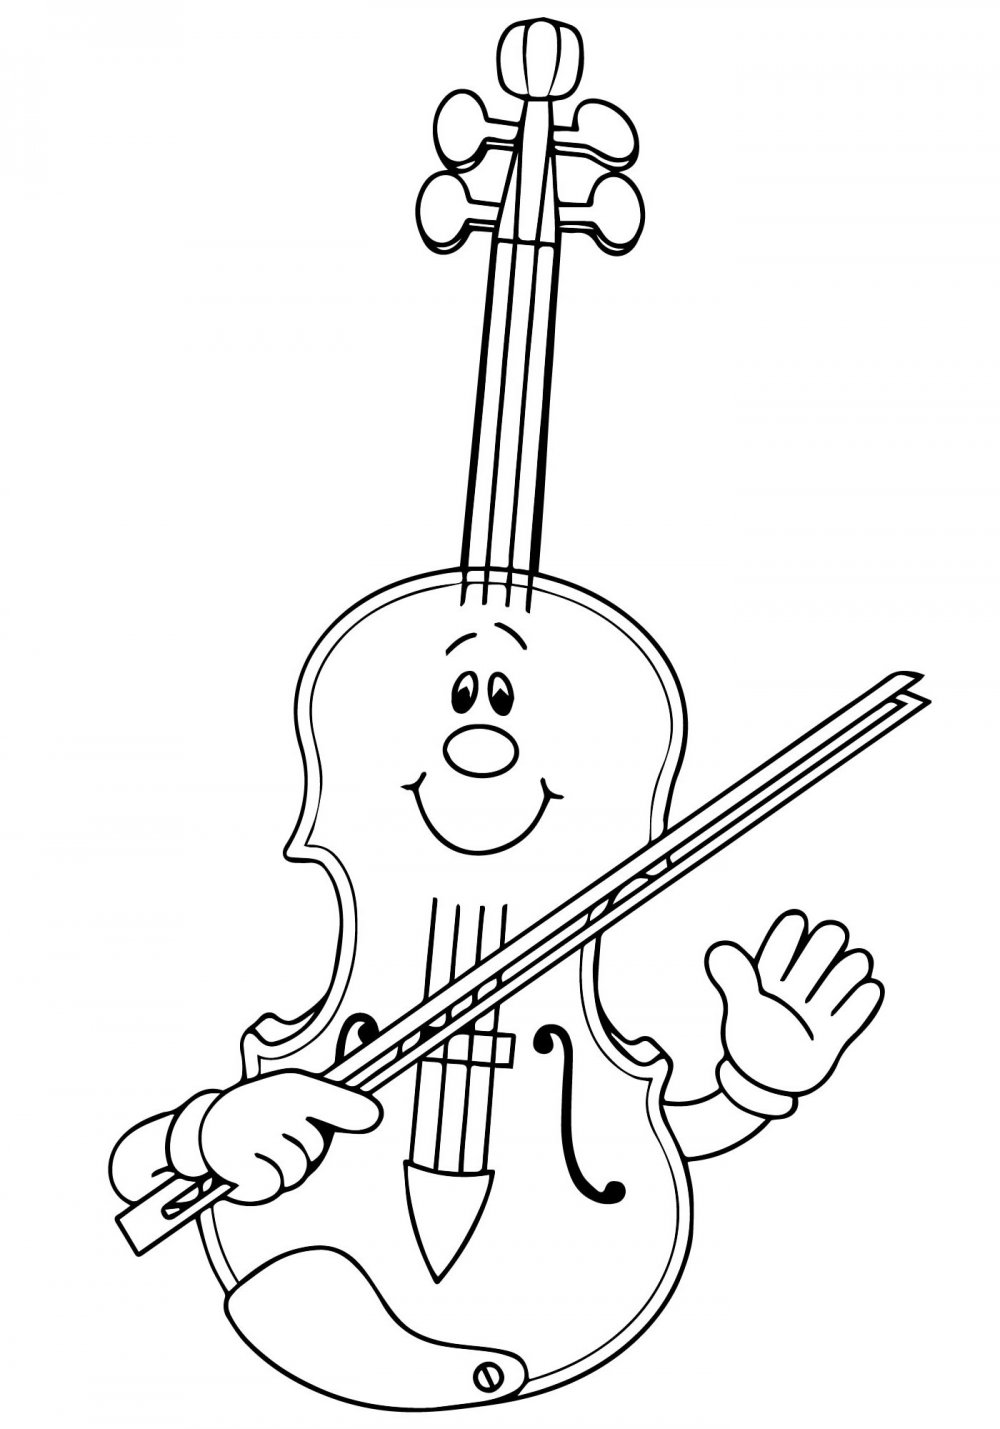 Как нарисовать скрипку поэтапно